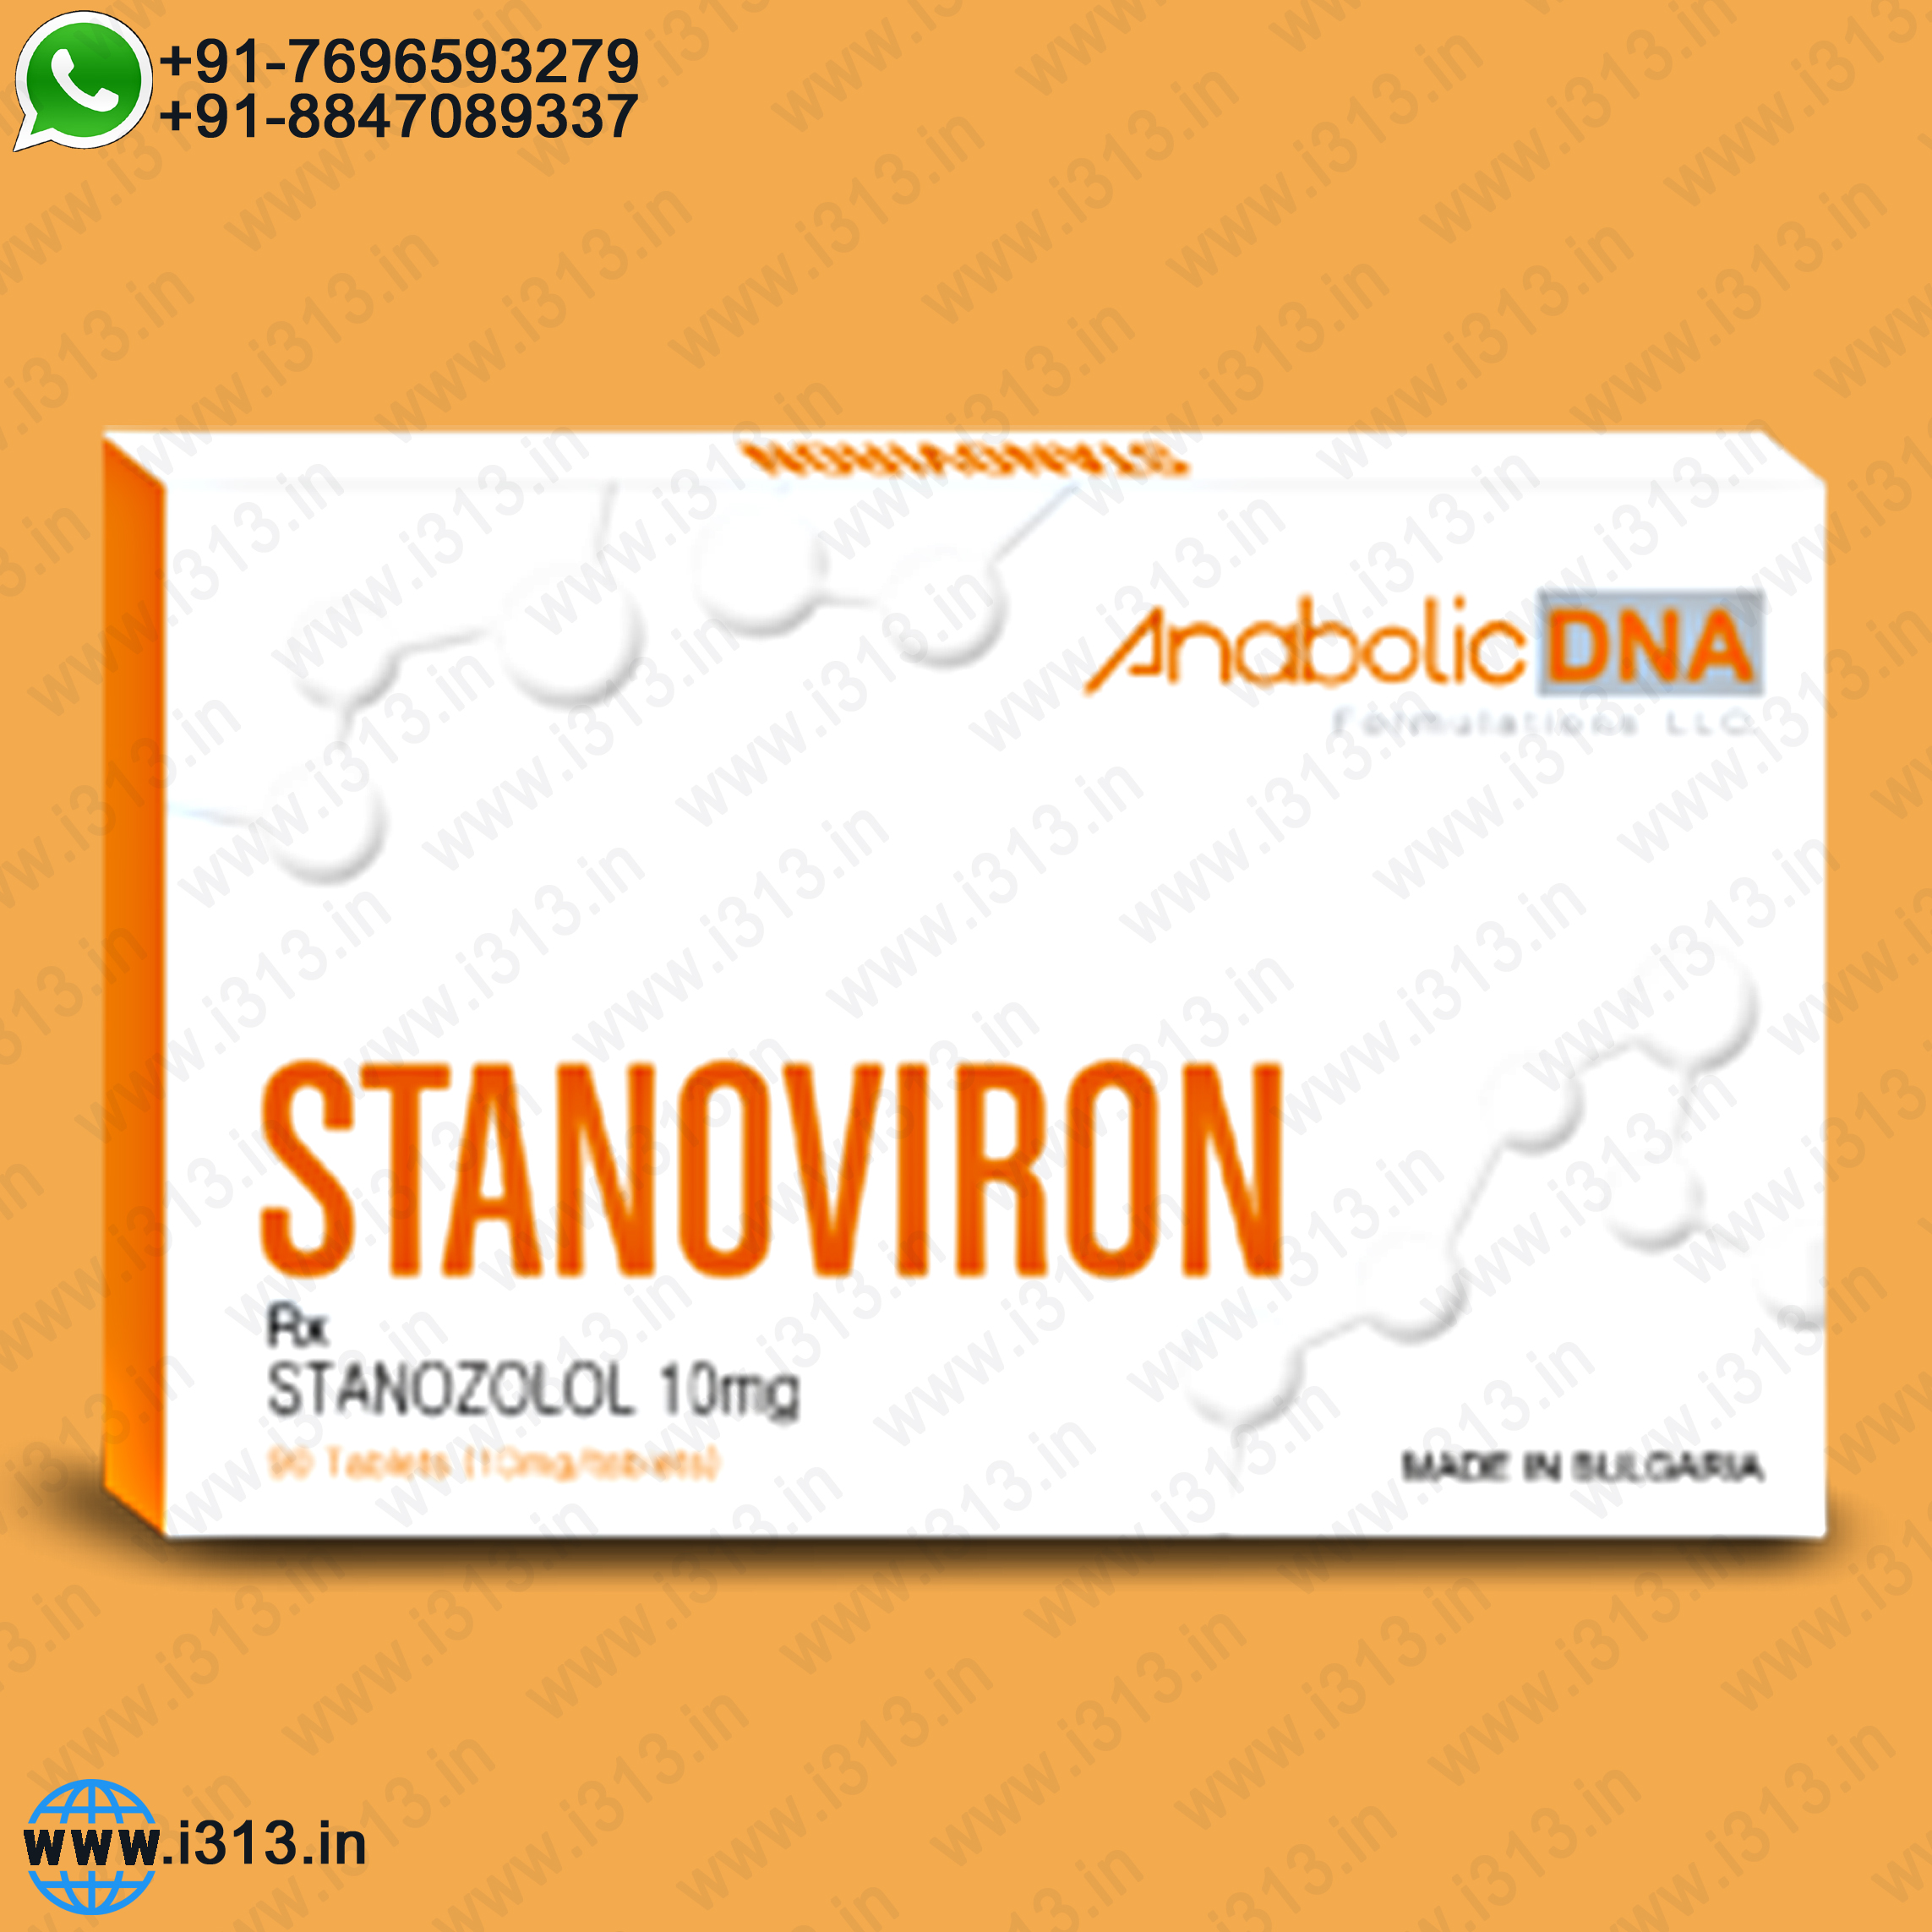 Anabolic DNA Stanoviron